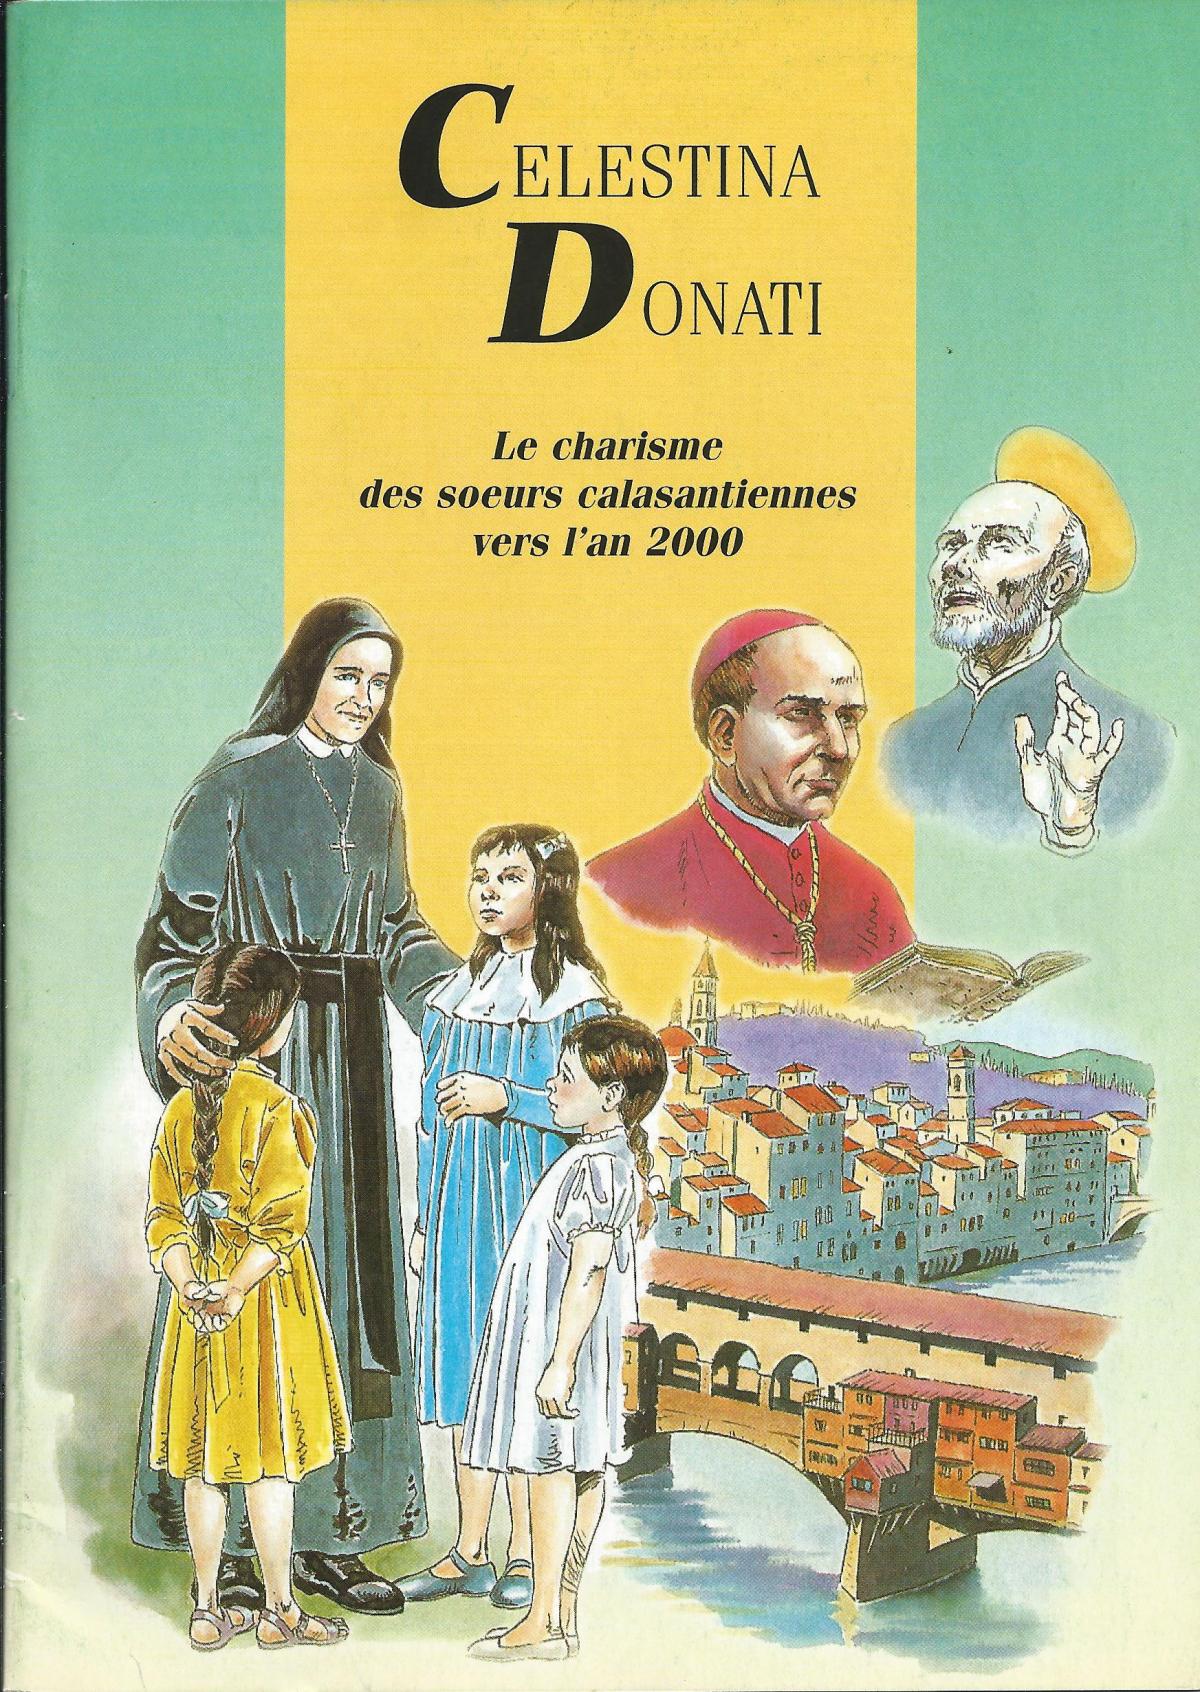 Celestina Donati, le charisme des sœurs calasantiennes vers l'an 2000